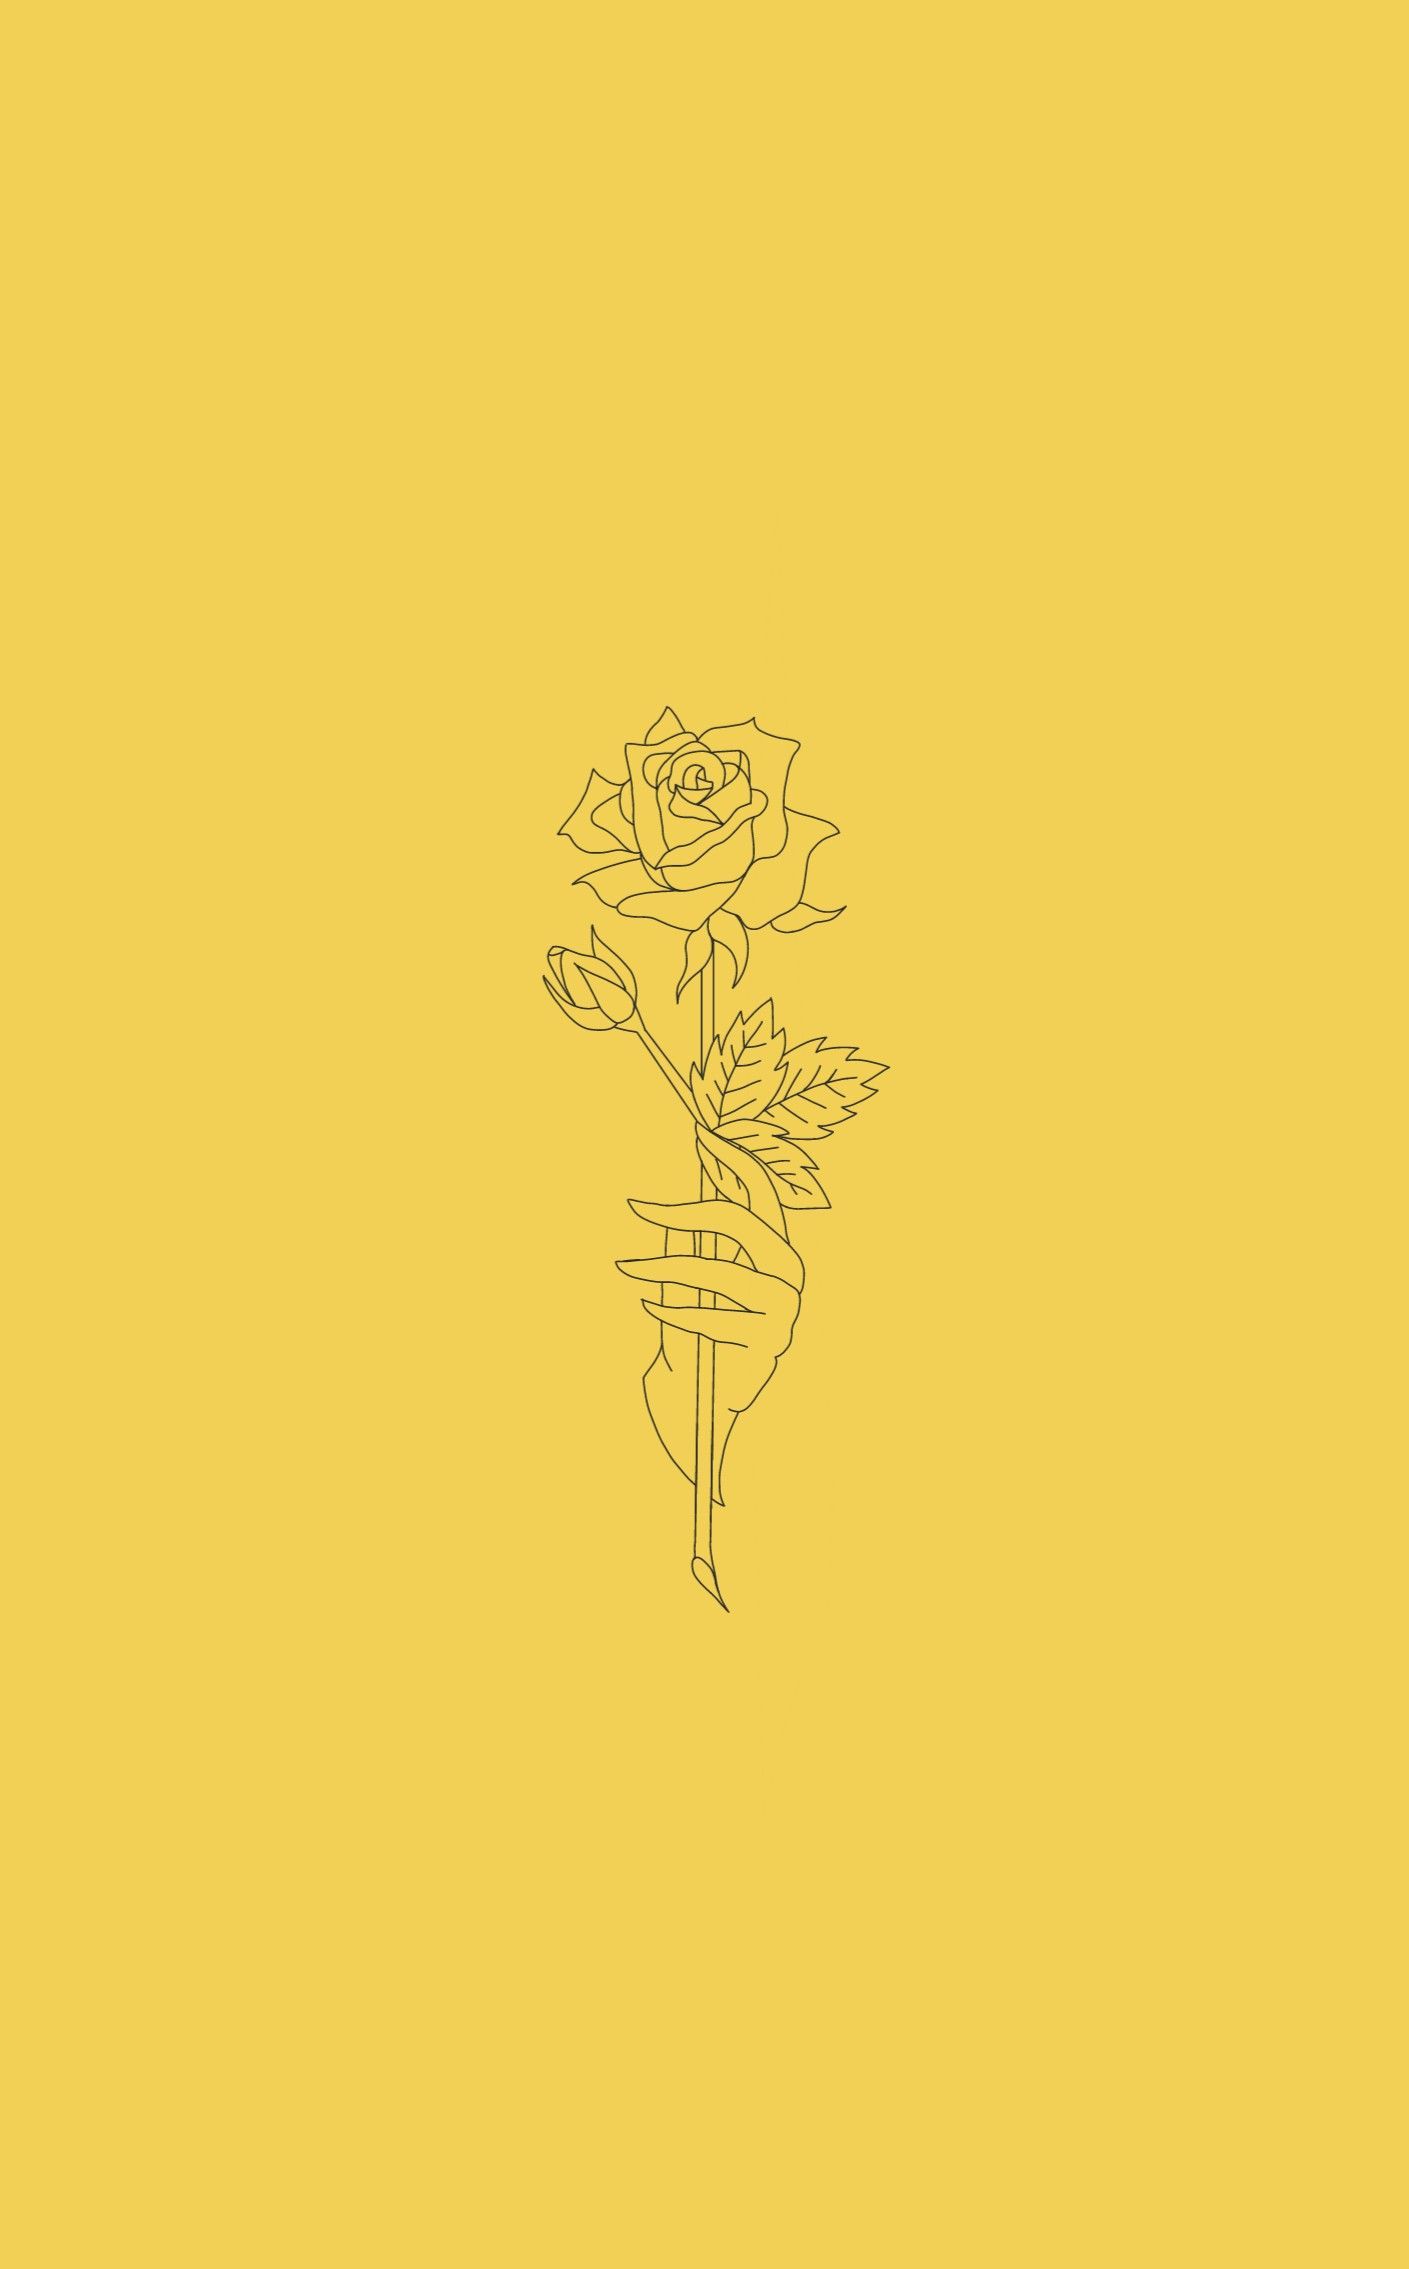 Aesthetic yellow flower wallpaper. Flower drawing, Yellow flower wallpaper, Flower drawing tumblr